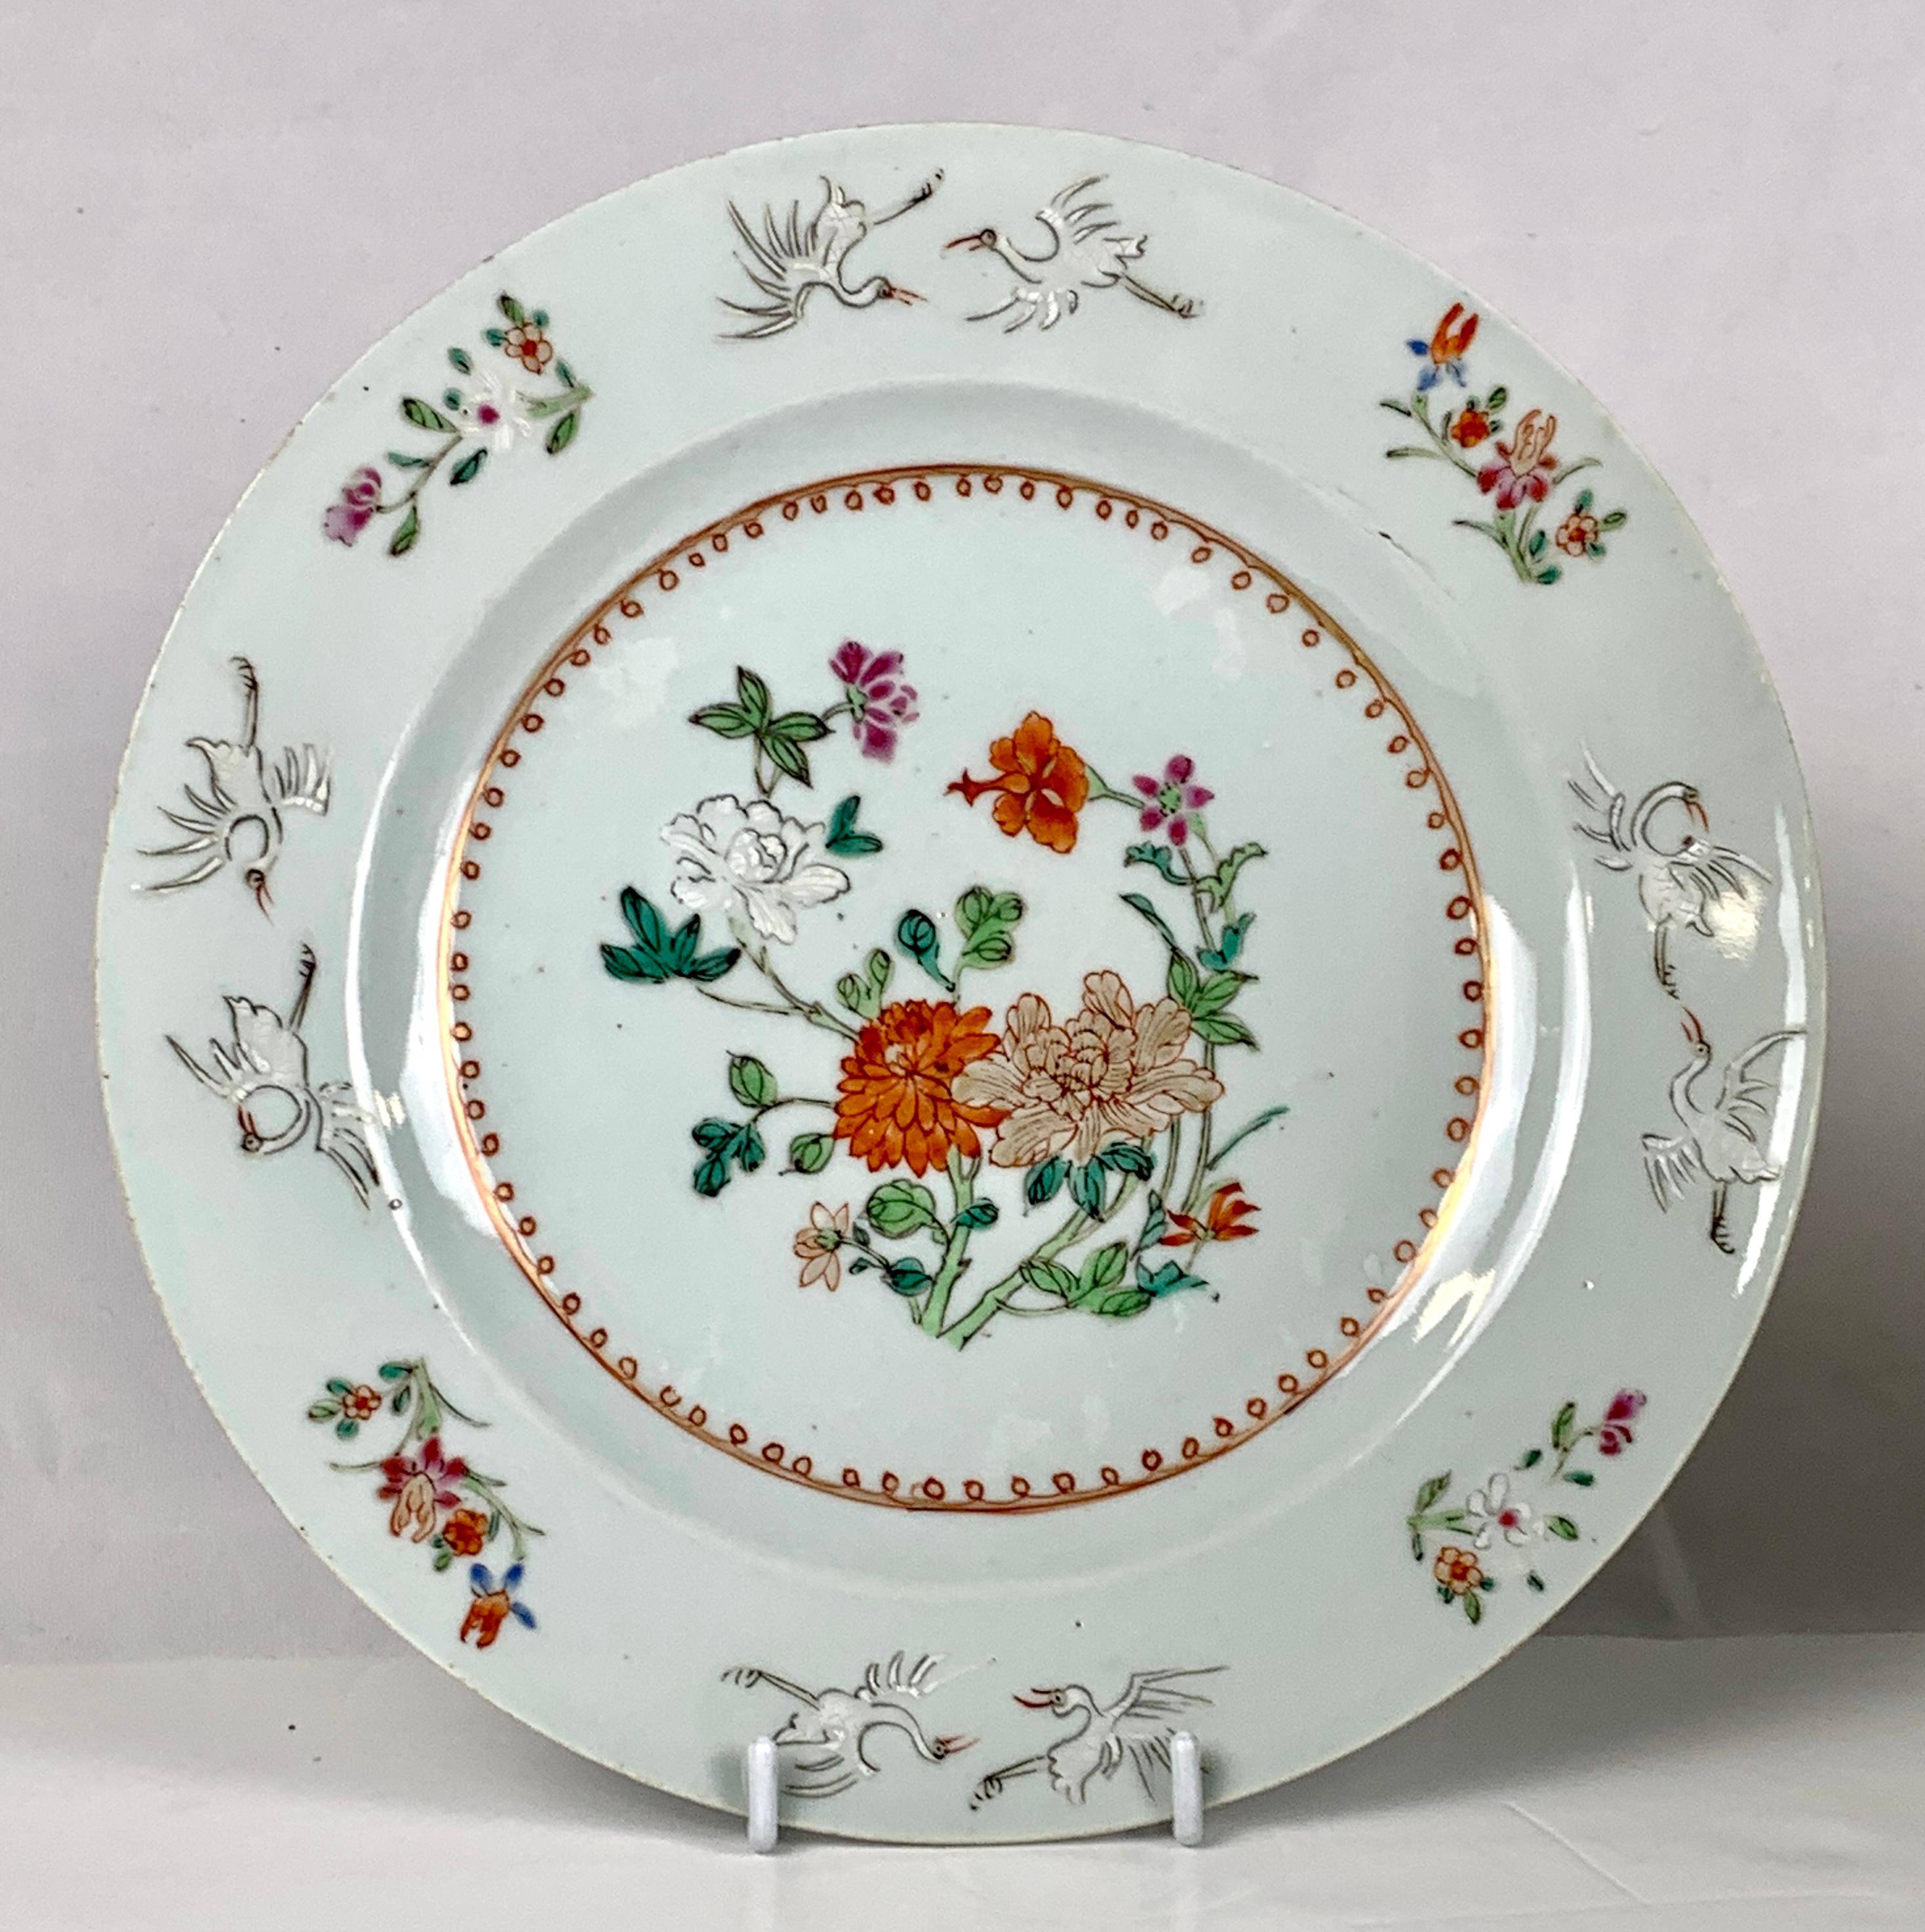 Dieses Paar schöner chinesischer Porzellanteller wurde Mitte des 18. Jahrhunderts im Famille-Rose-Stil handbemalt. Die Mitte jedes Tellers ist mit zarten farbigen Emaillen und Gold bemalt.
Kleine grüne Blätter betonen schöne Pfingstrosen und andere